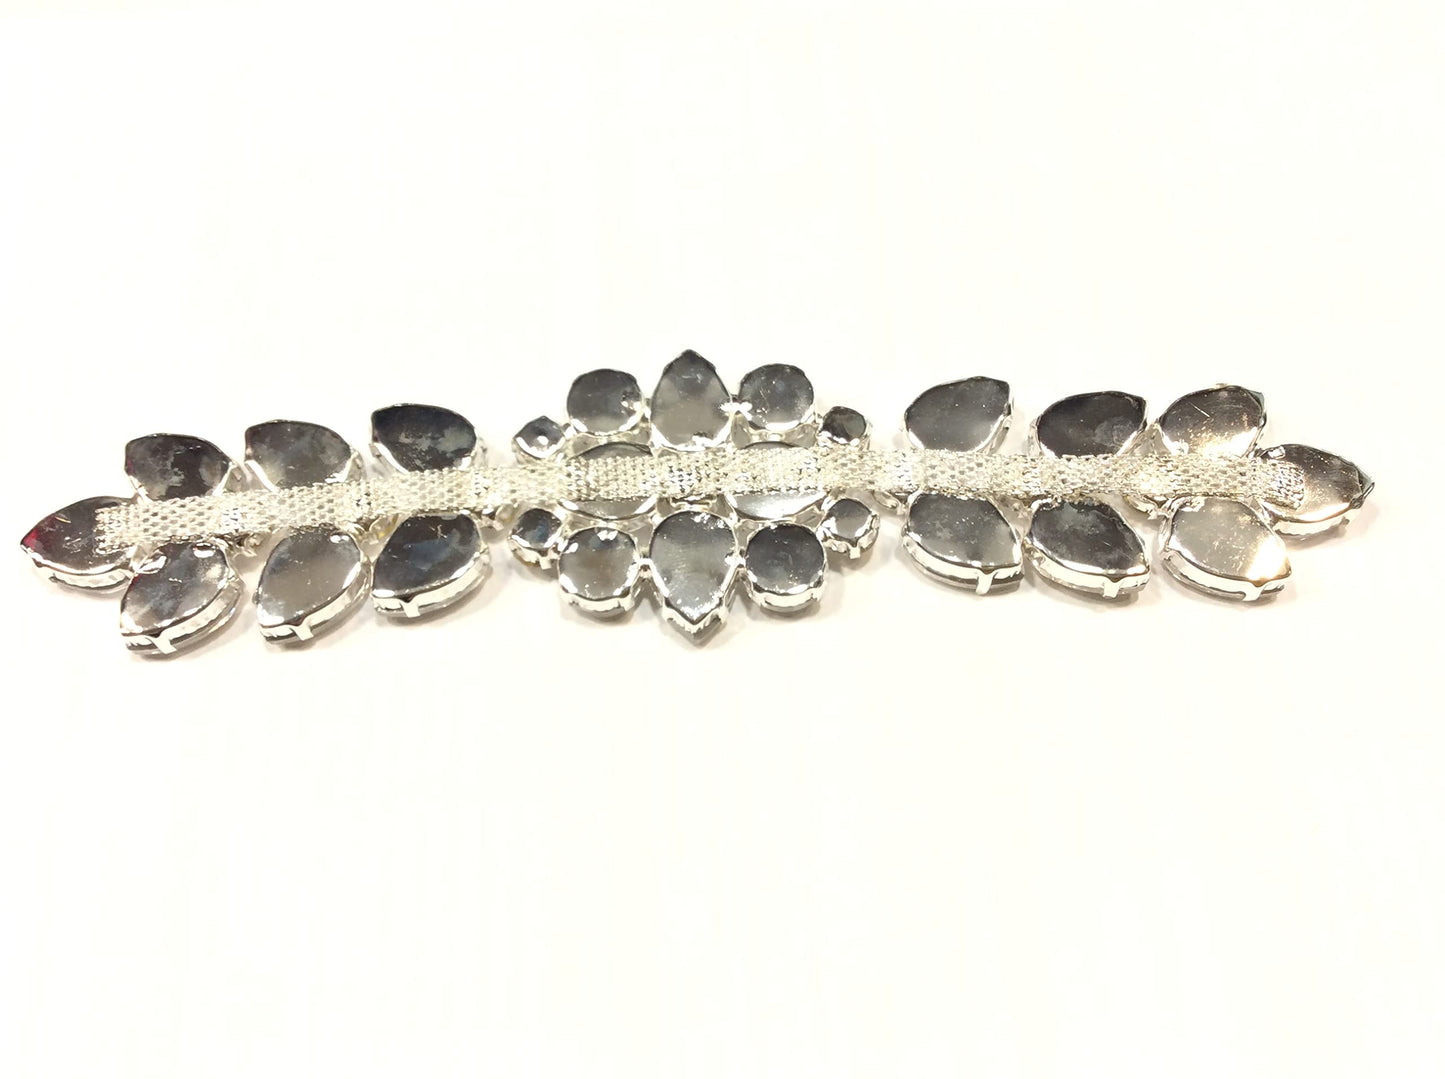 1 applicazione catena gioiello da cucito rifiniture e abbellimenti tralcio pietre navette crystal cm 18